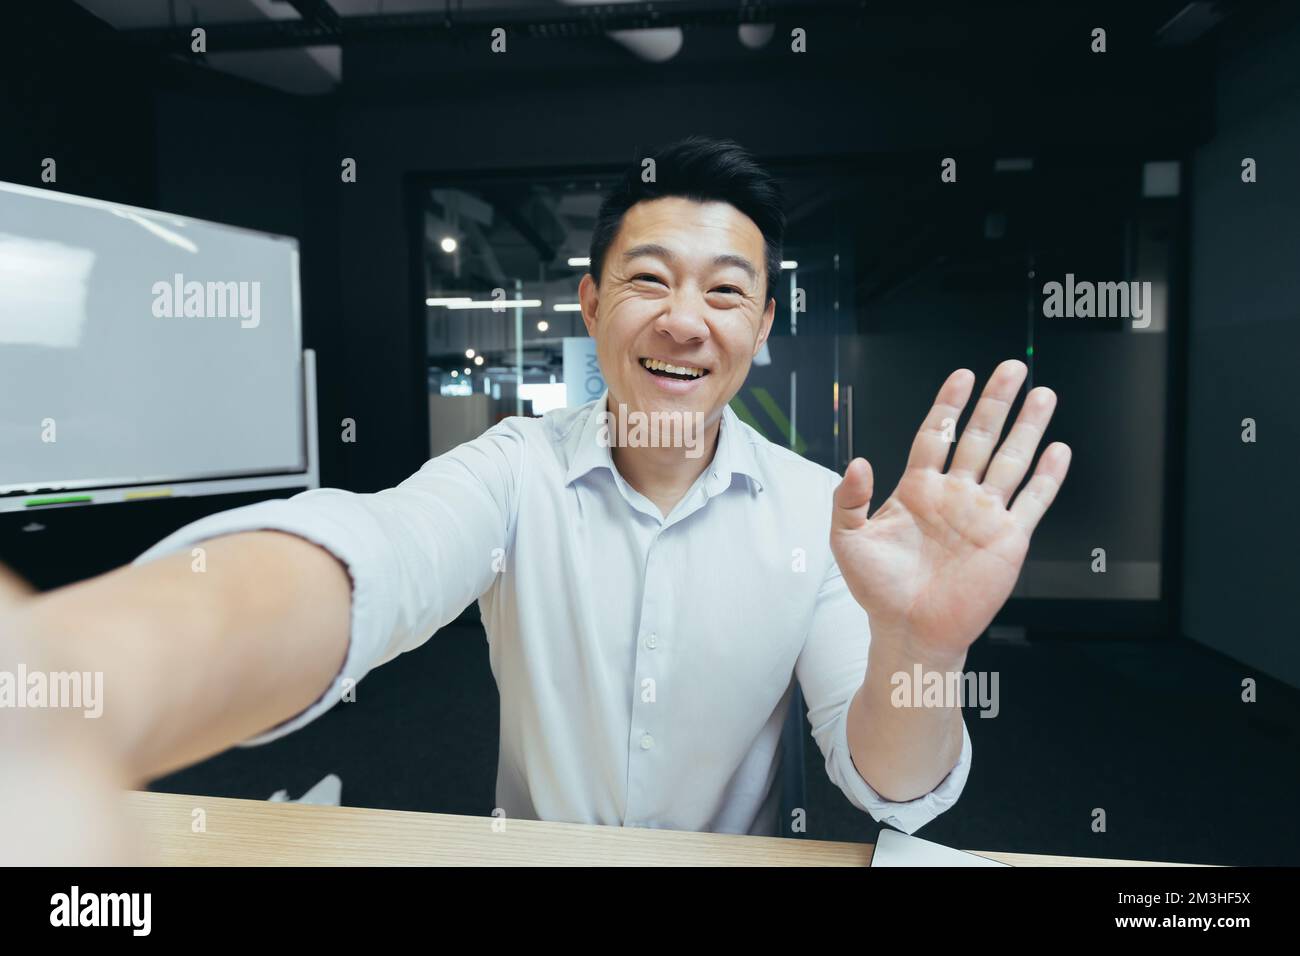 Porträt eines jungen, gutaussehenden Asiaten, der ein Selfie macht, ein Video aufnimmt, bei einem Videoanruf spricht, ein Telefon hält, die Kamera winkt und grüßt, lächelt. Stockfoto